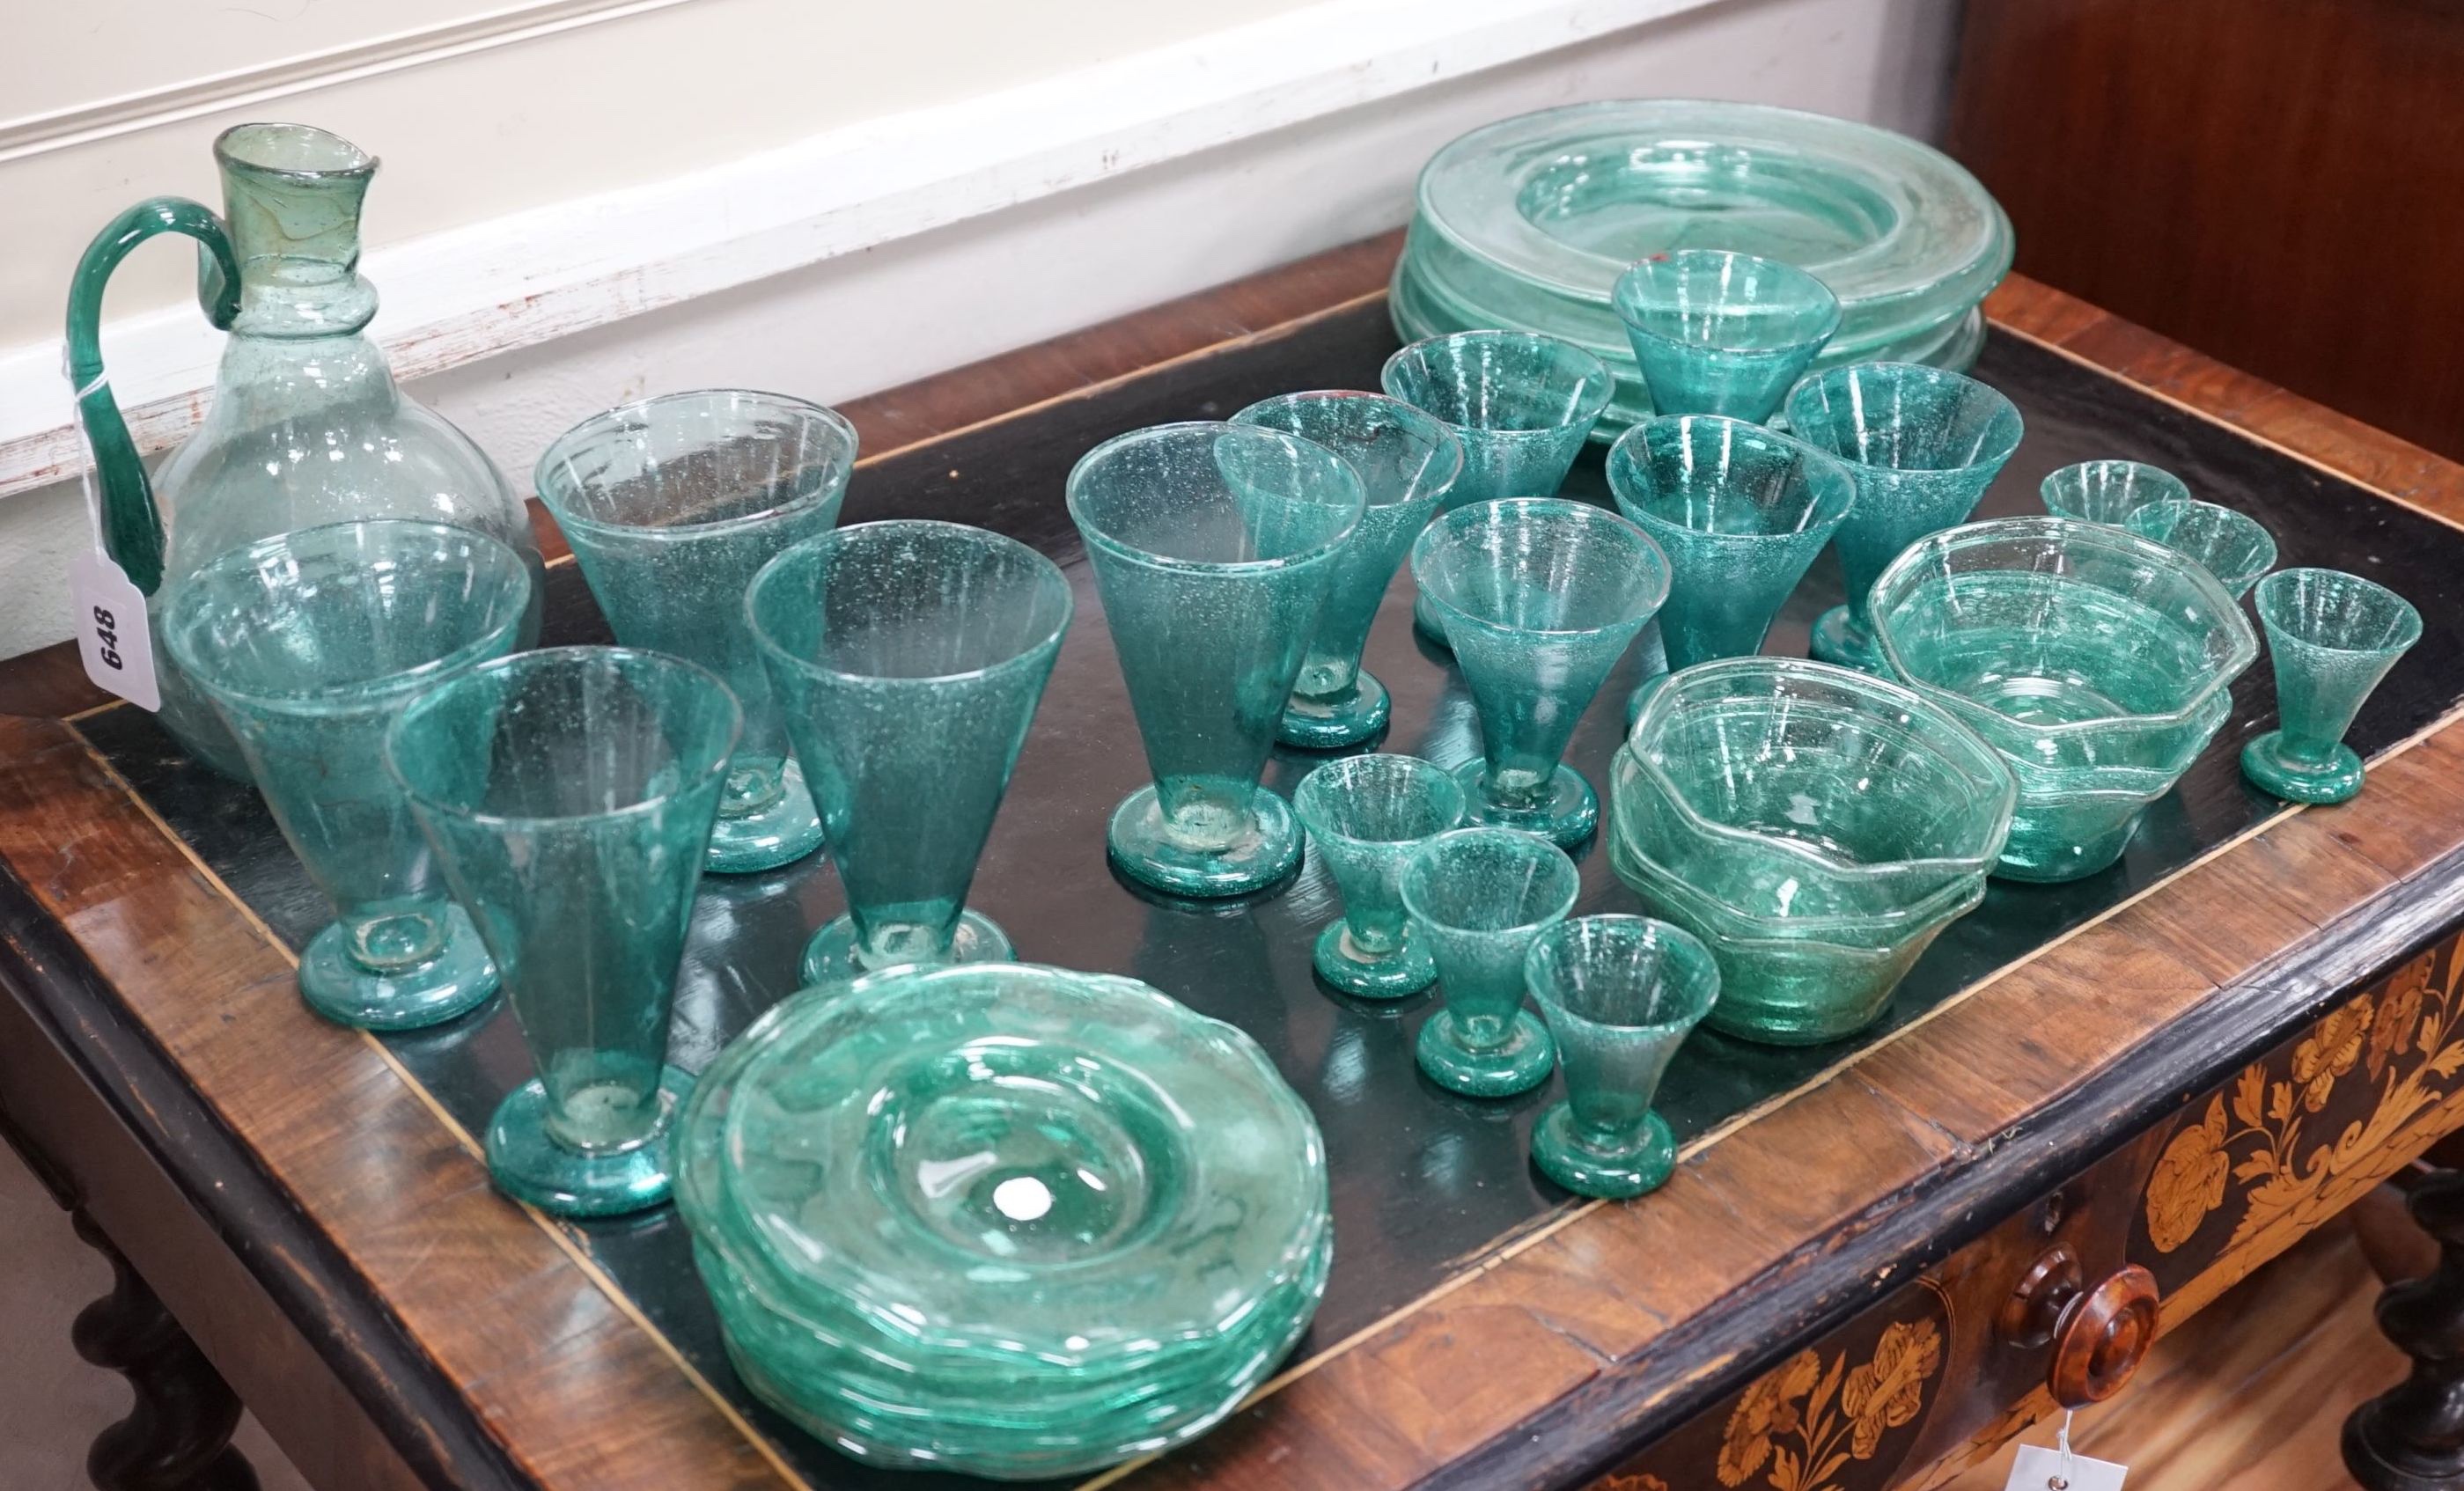 A quantity of green glassware